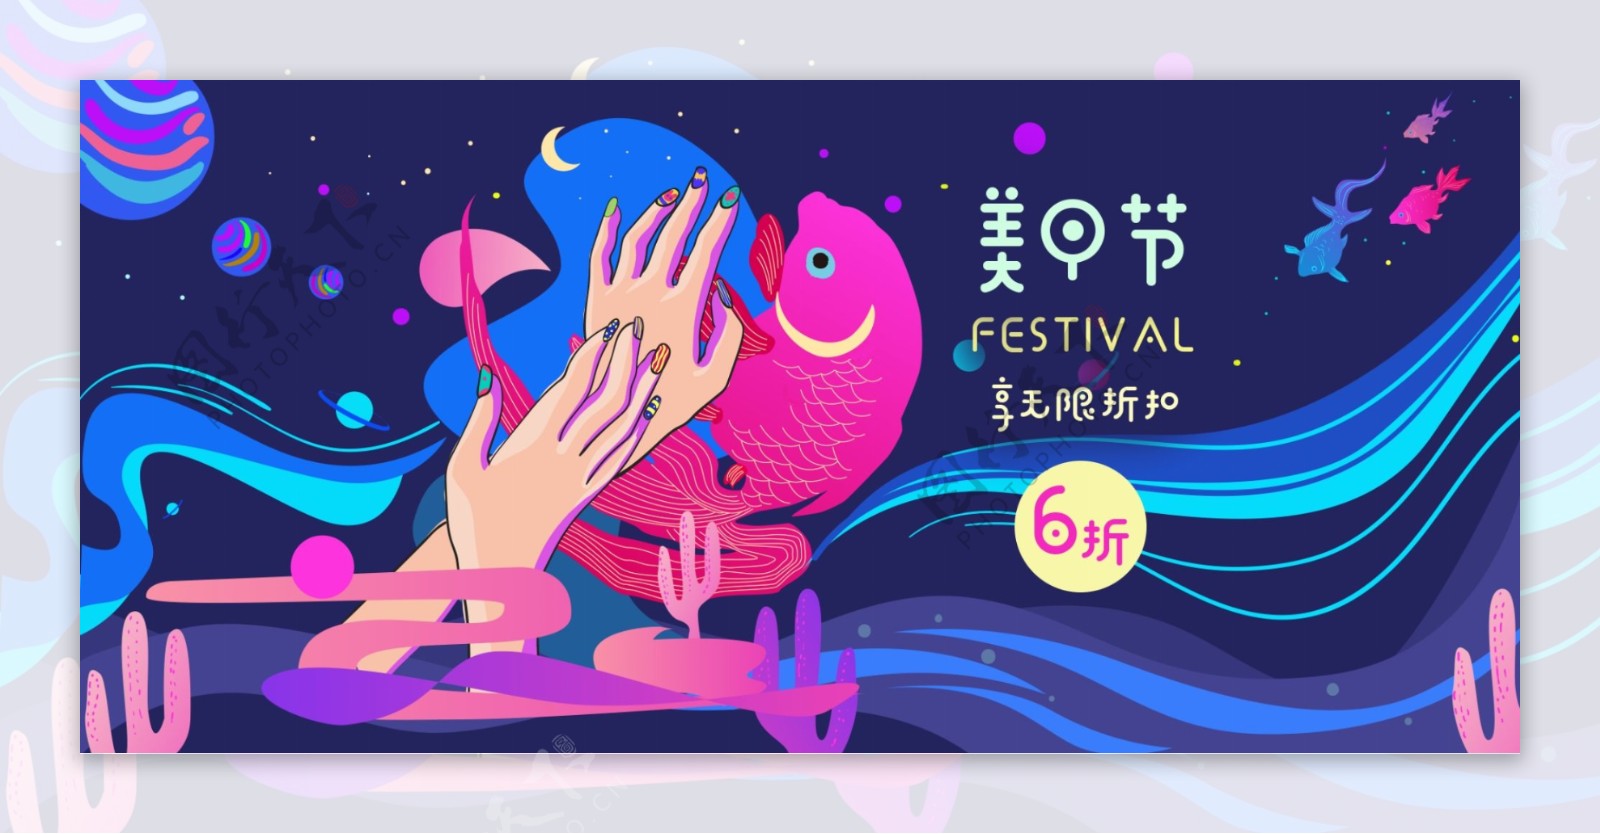 天猫节日促销炫彩手绘插画风格海报